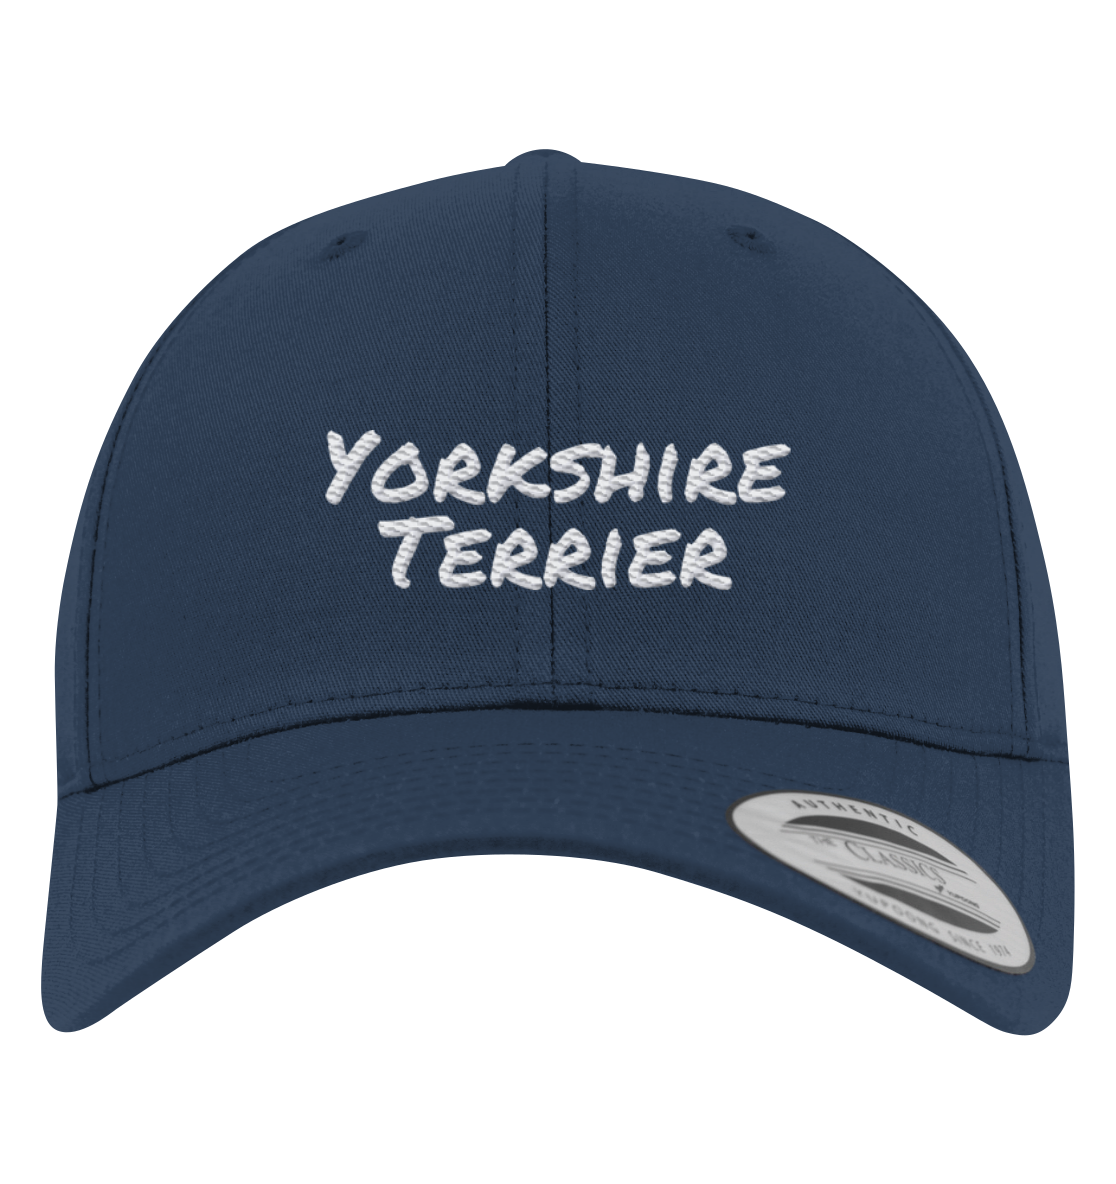 Yorkshire Terrier - Premium Baseball Cap